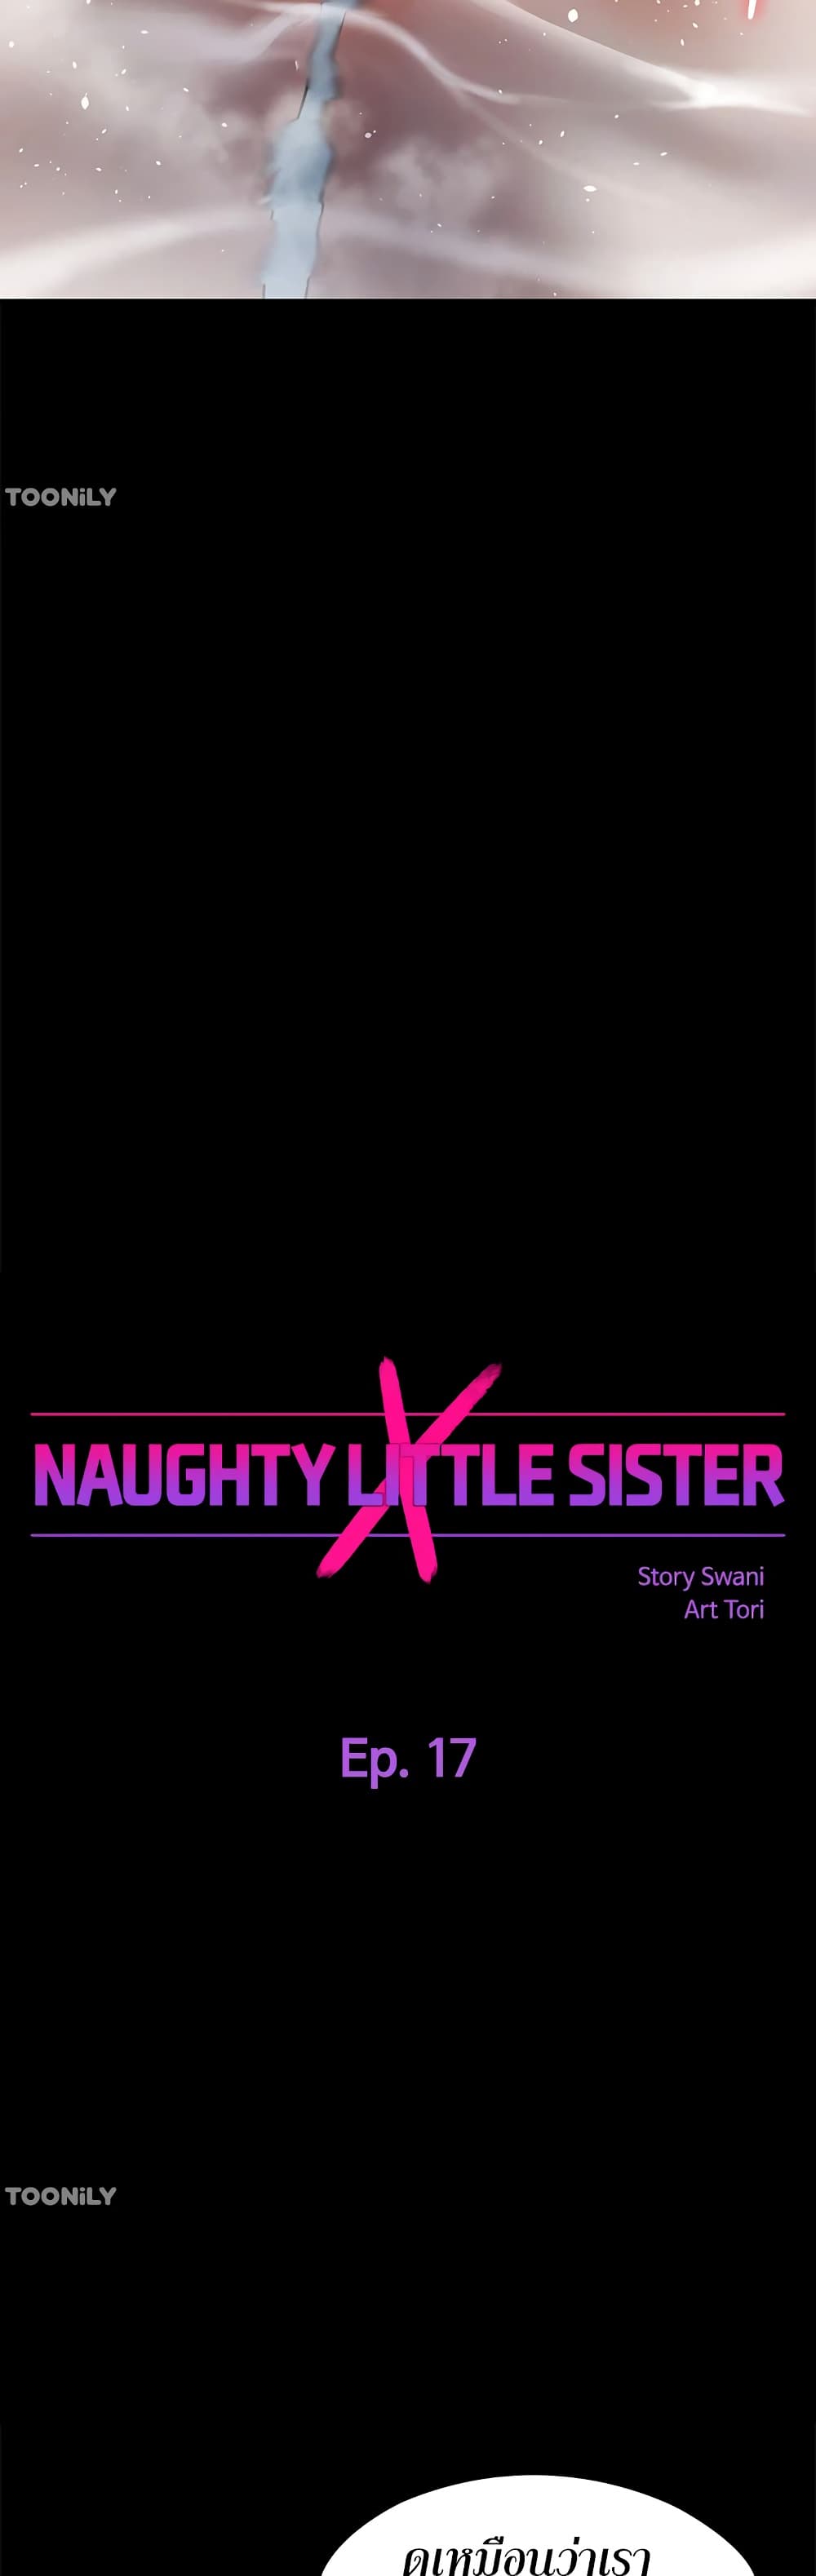 Naughty Little Sister 17-17